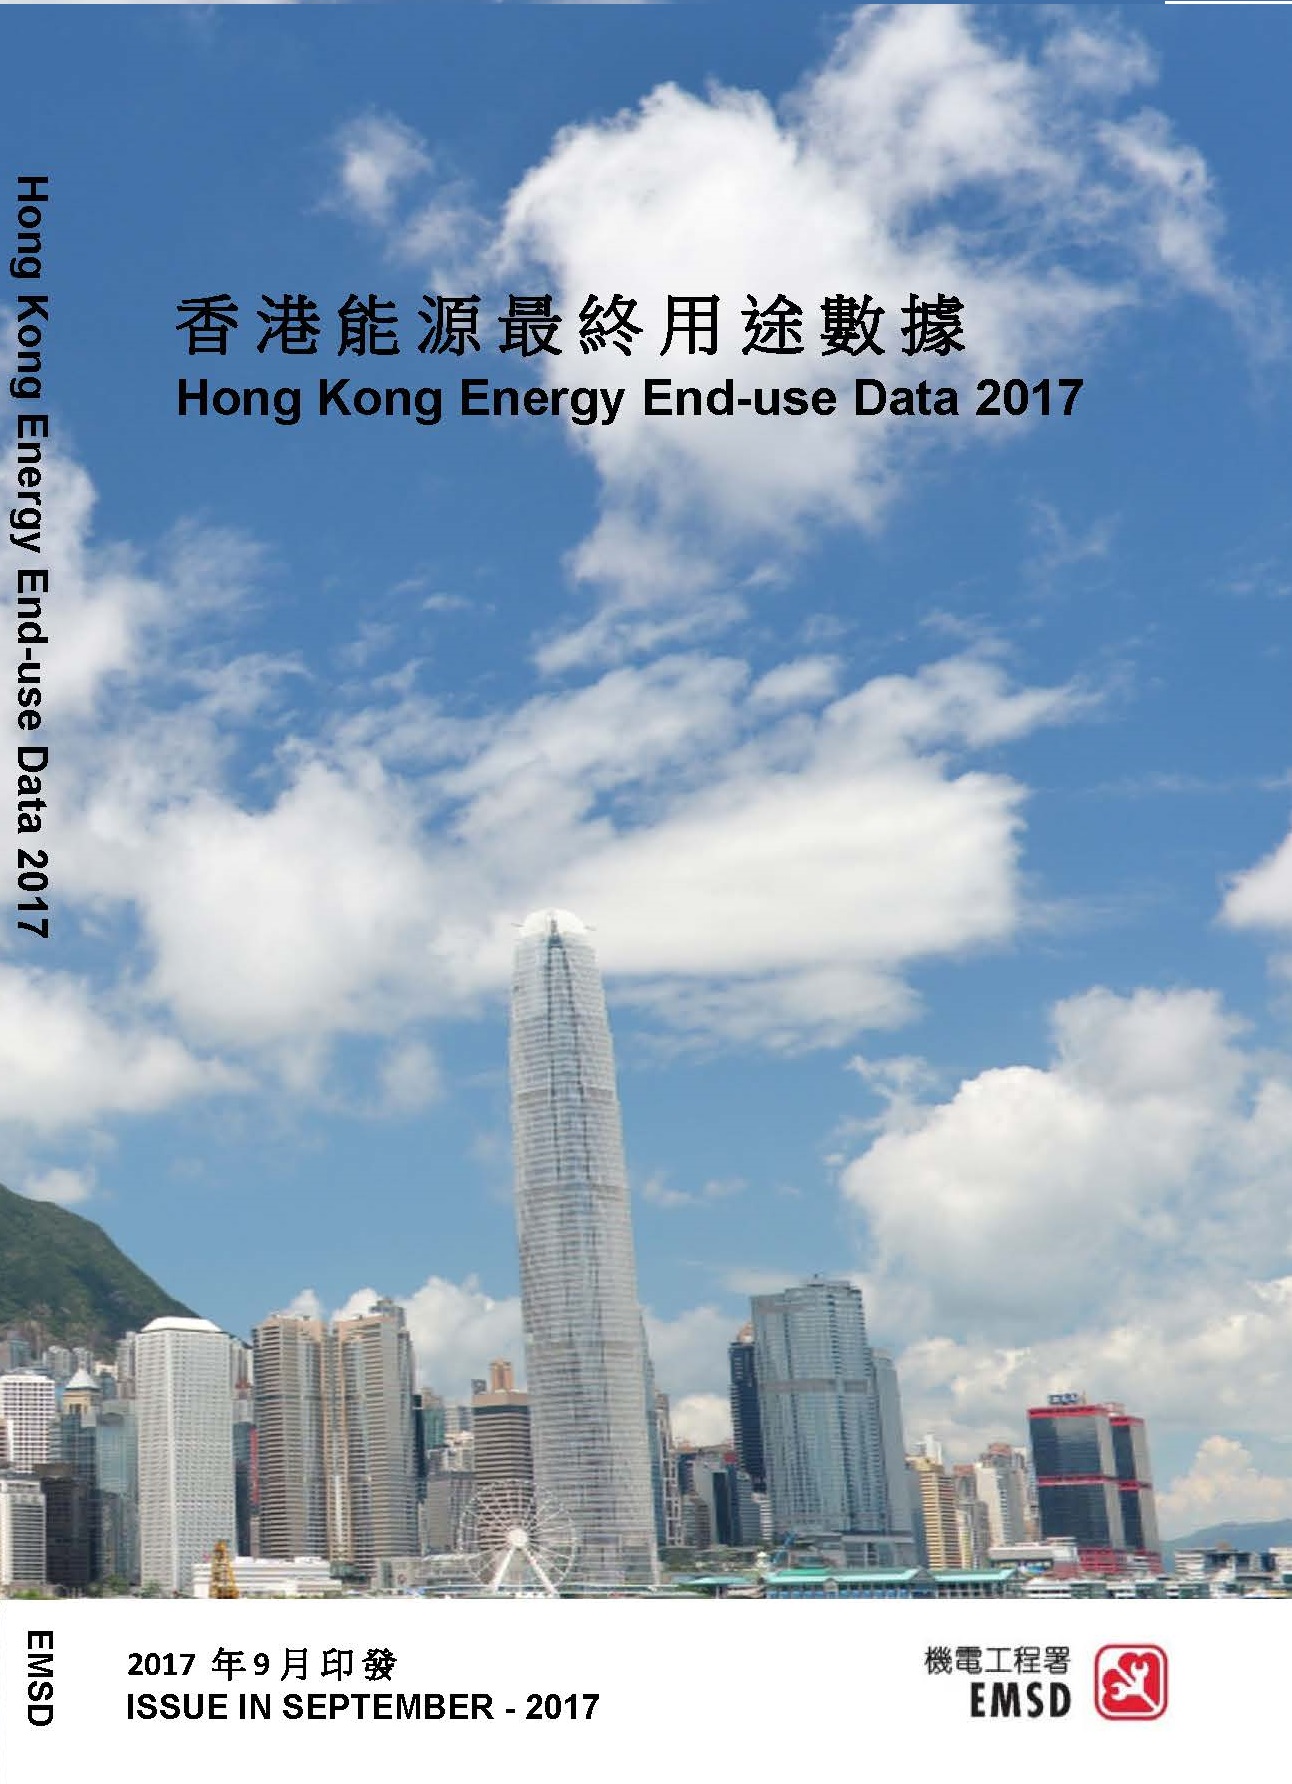 「香港能源最终用途数据2017」
